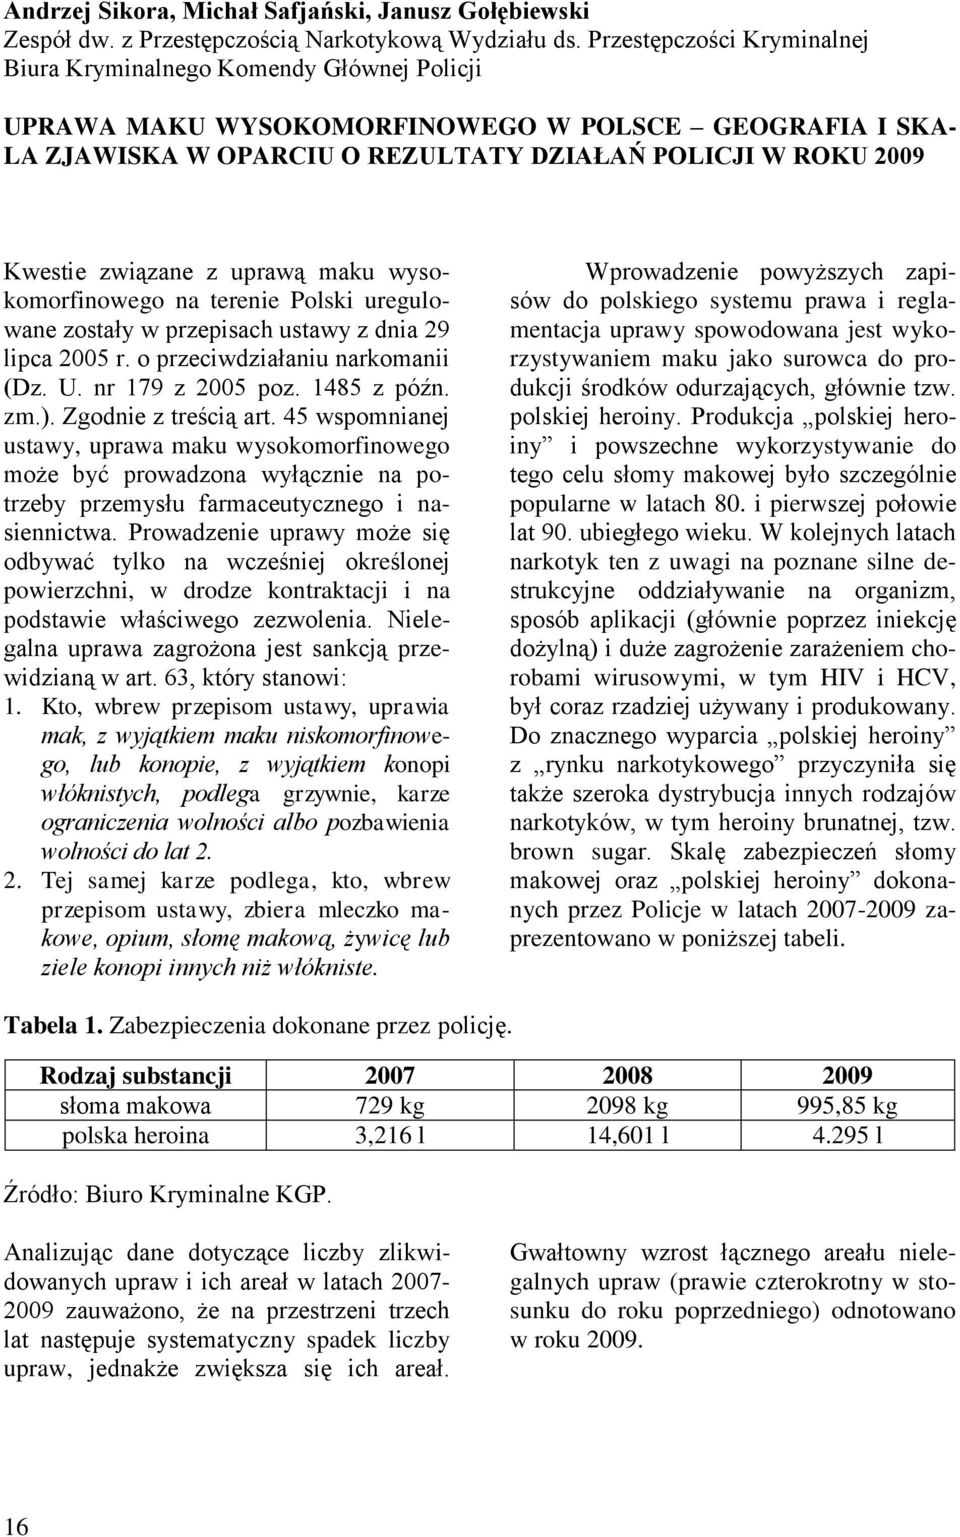 związane z uprawą maku wysokomorfinowego na terenie Polski uregulowane zostały w przepisach ustawy z dnia 29 lipca 2005 r. o przeciwdziałaniu narkomanii (Dz. U. nr 179 z 2005 poz. 1485 z późn. zm.).